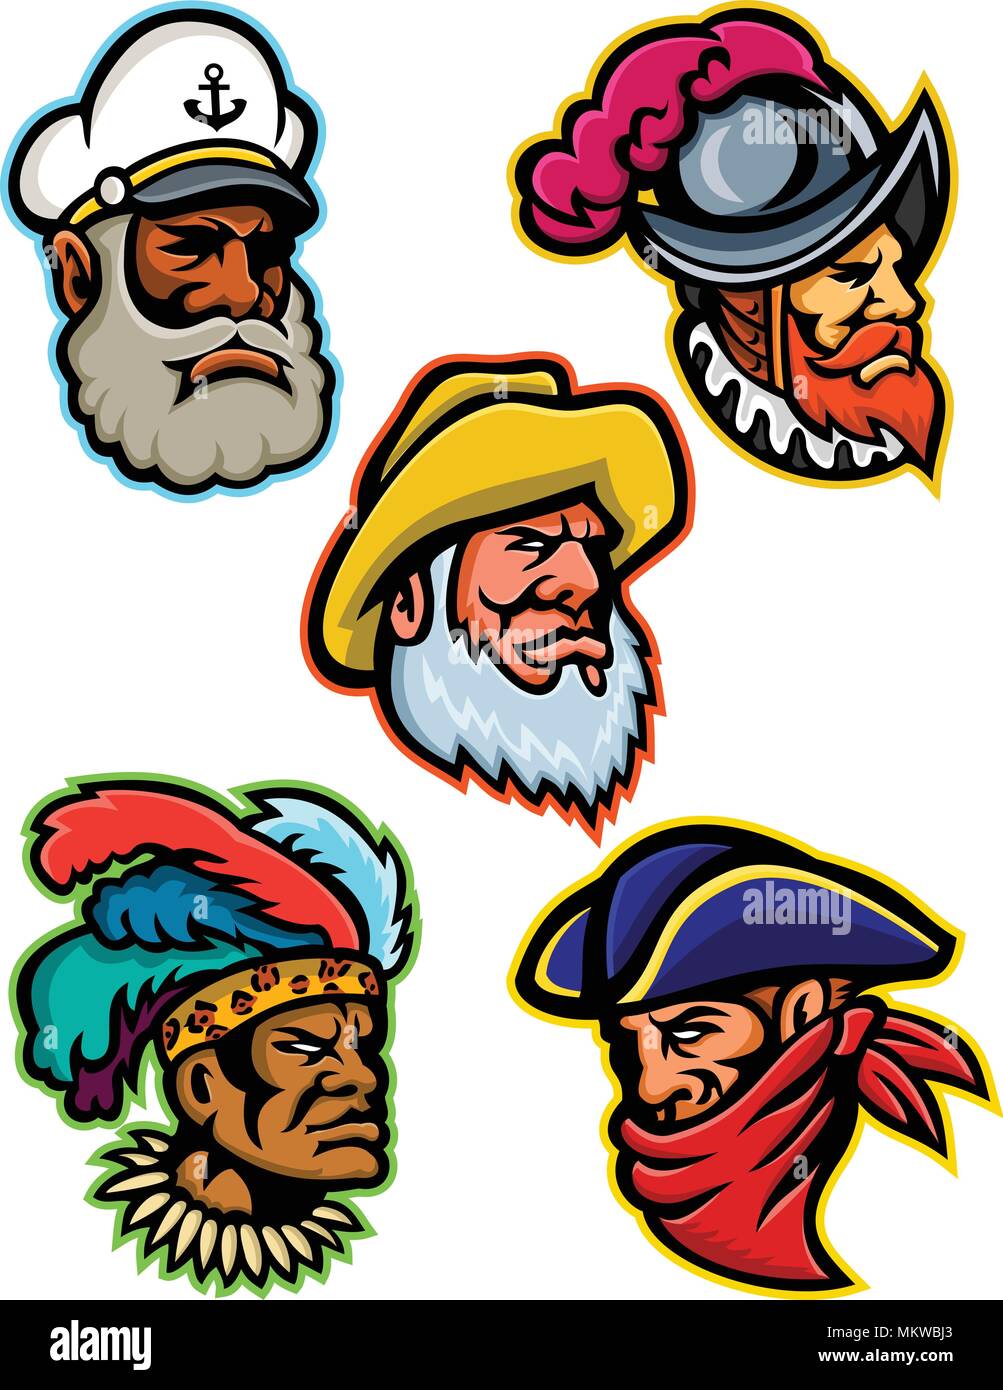 L'icône illustration mascotte ensemble de têtes d'un conquistador ou explorer, capitaine ou patron, le vieux pêcheur, Zulu warrior et un voleur ou 379 vi Illustration de Vecteur